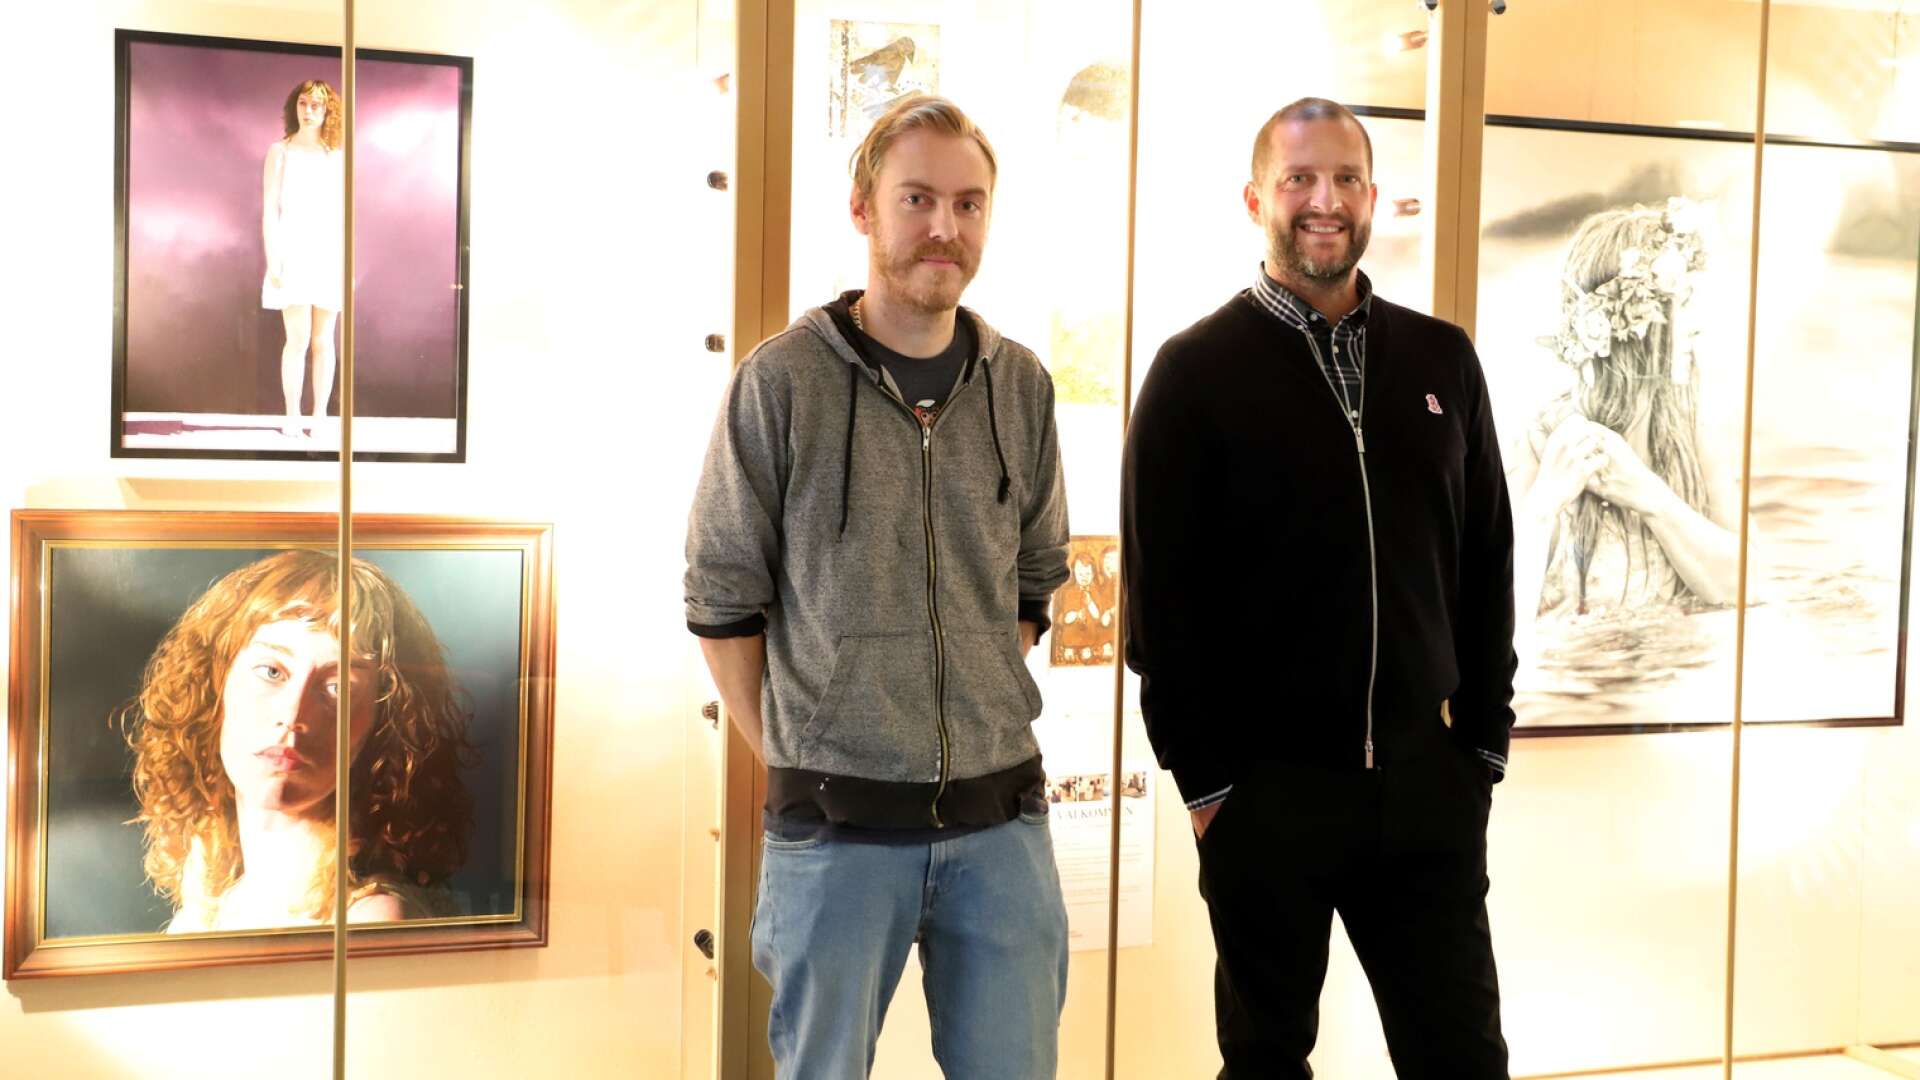 Värmlands konstnärsförbunds nya medlemmar ger smakprov på sin konst: ”Fler än vanligt”